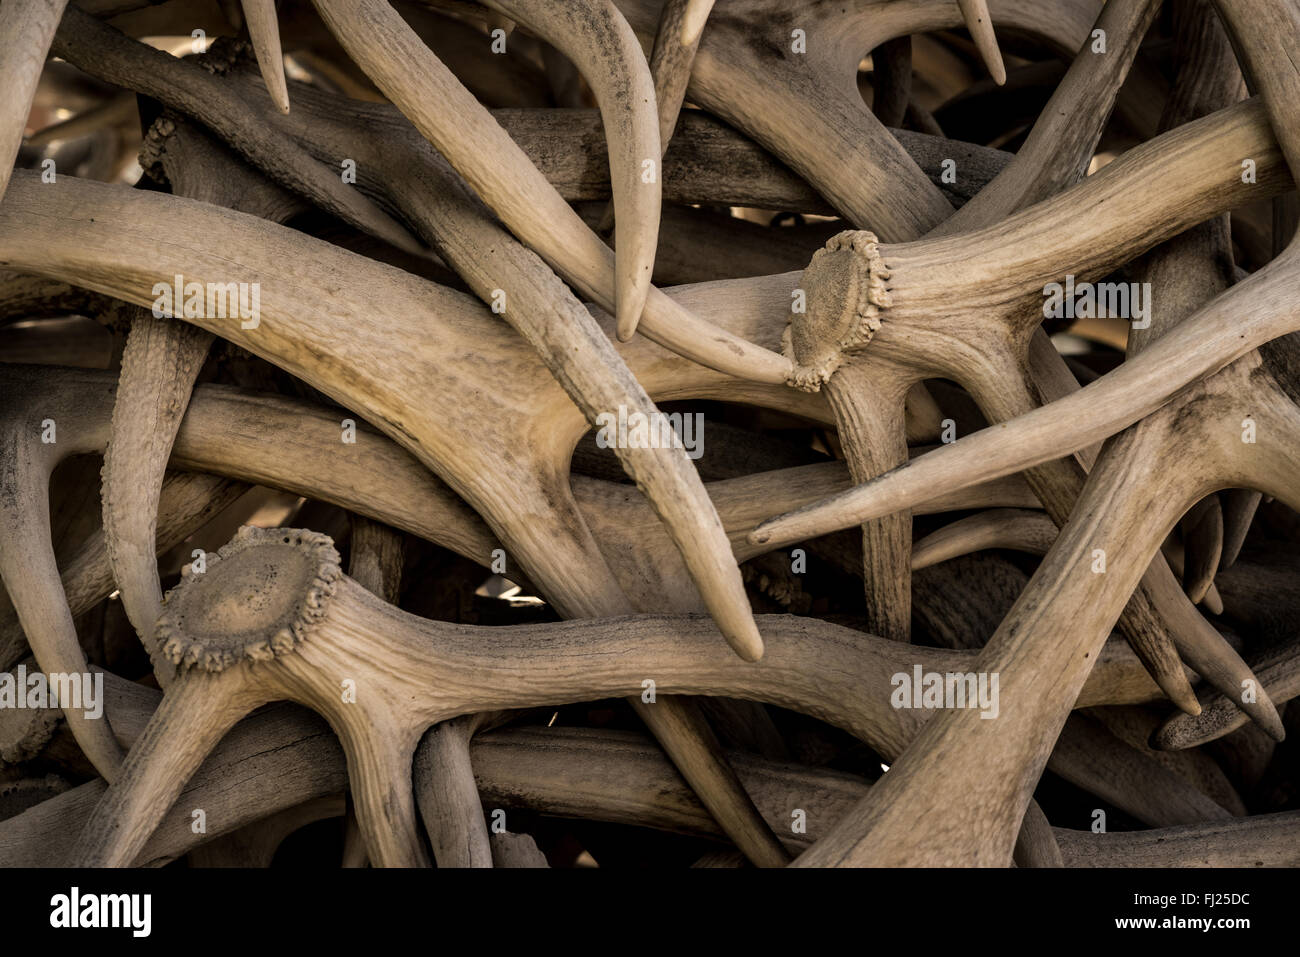 Elk antlers bundled together. Stock Photo